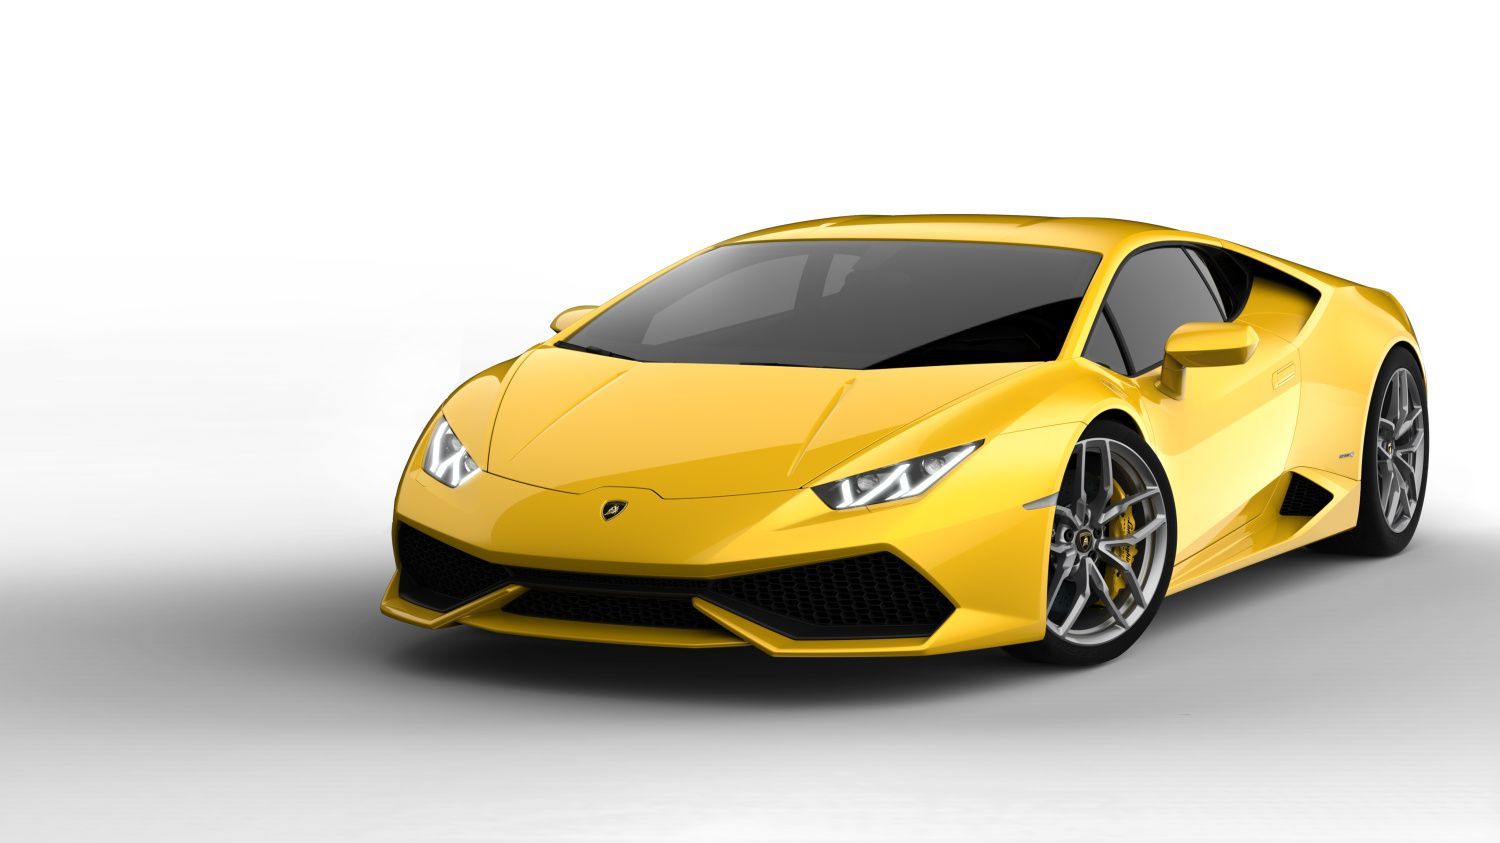 Top auta fotbalistů: Lamborghini Huracan